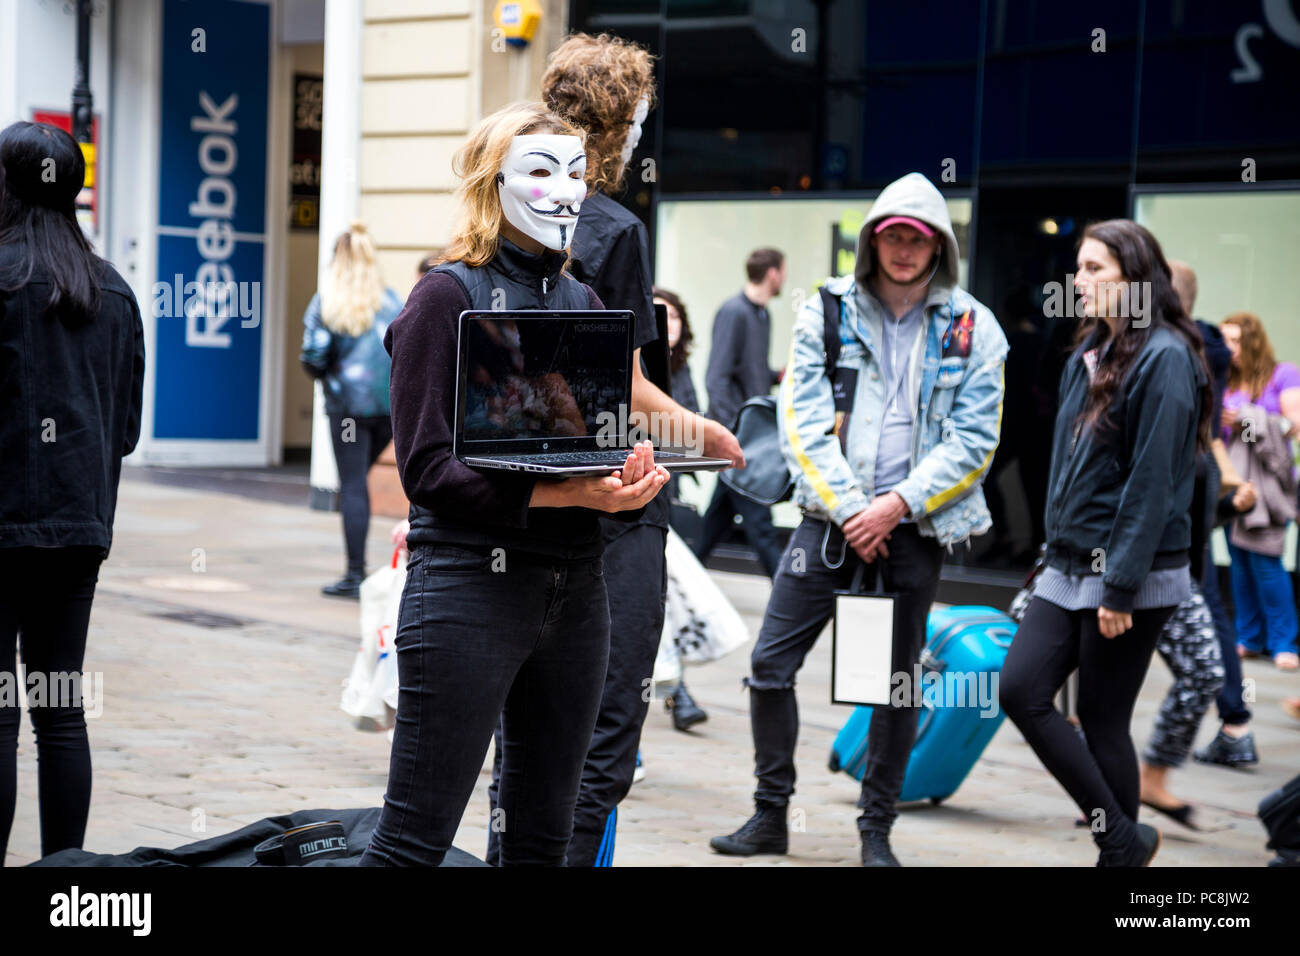 2 de junio de 2018 en Manchester, Reino Unido - Anónimo máscaras protestando contra la crueldad animal en la industria alimentaria Foto de stock